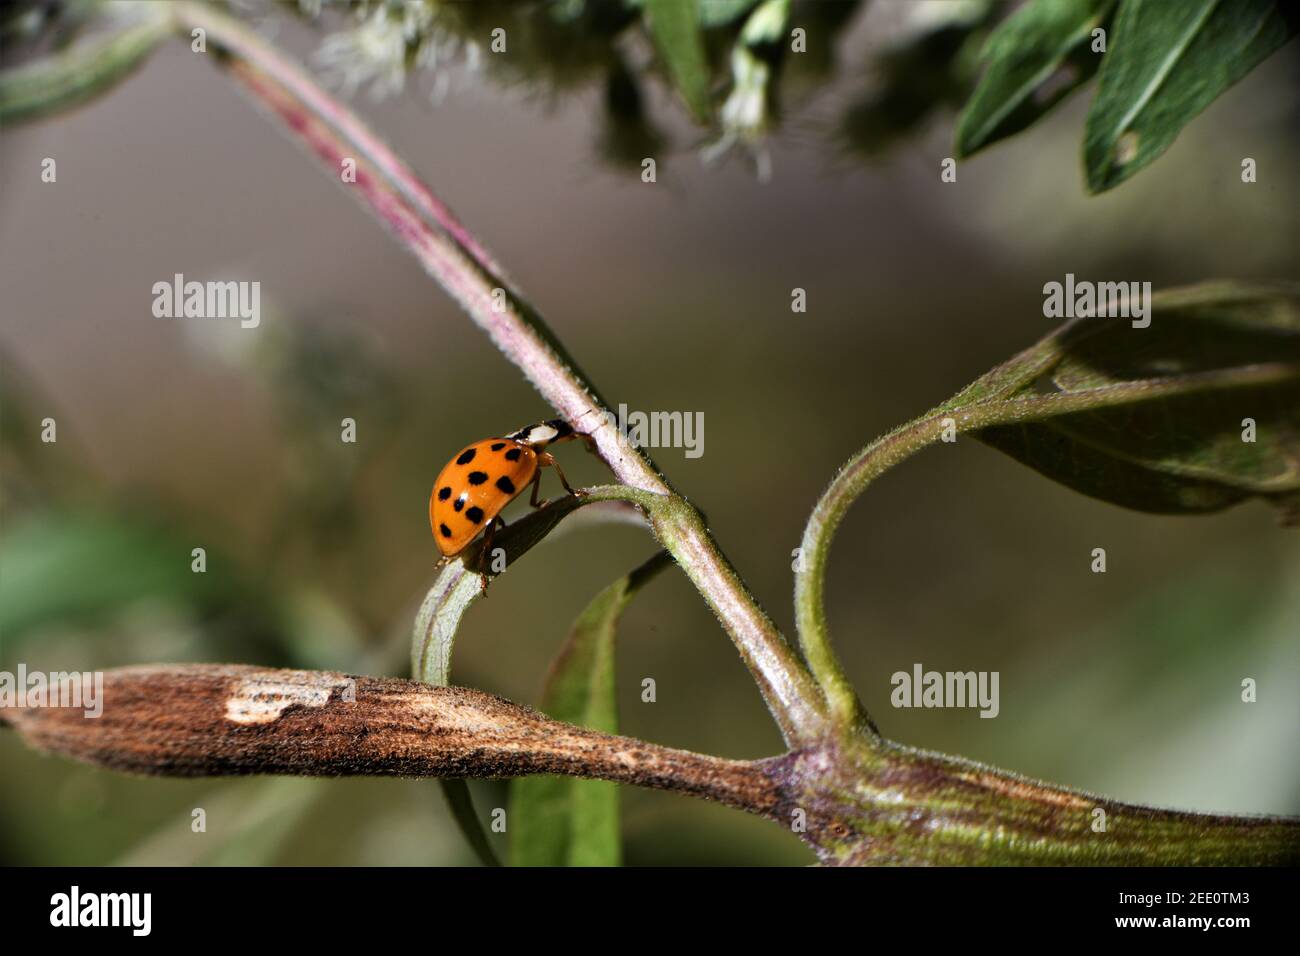 Black spotted orange ladybug. Stock Photo